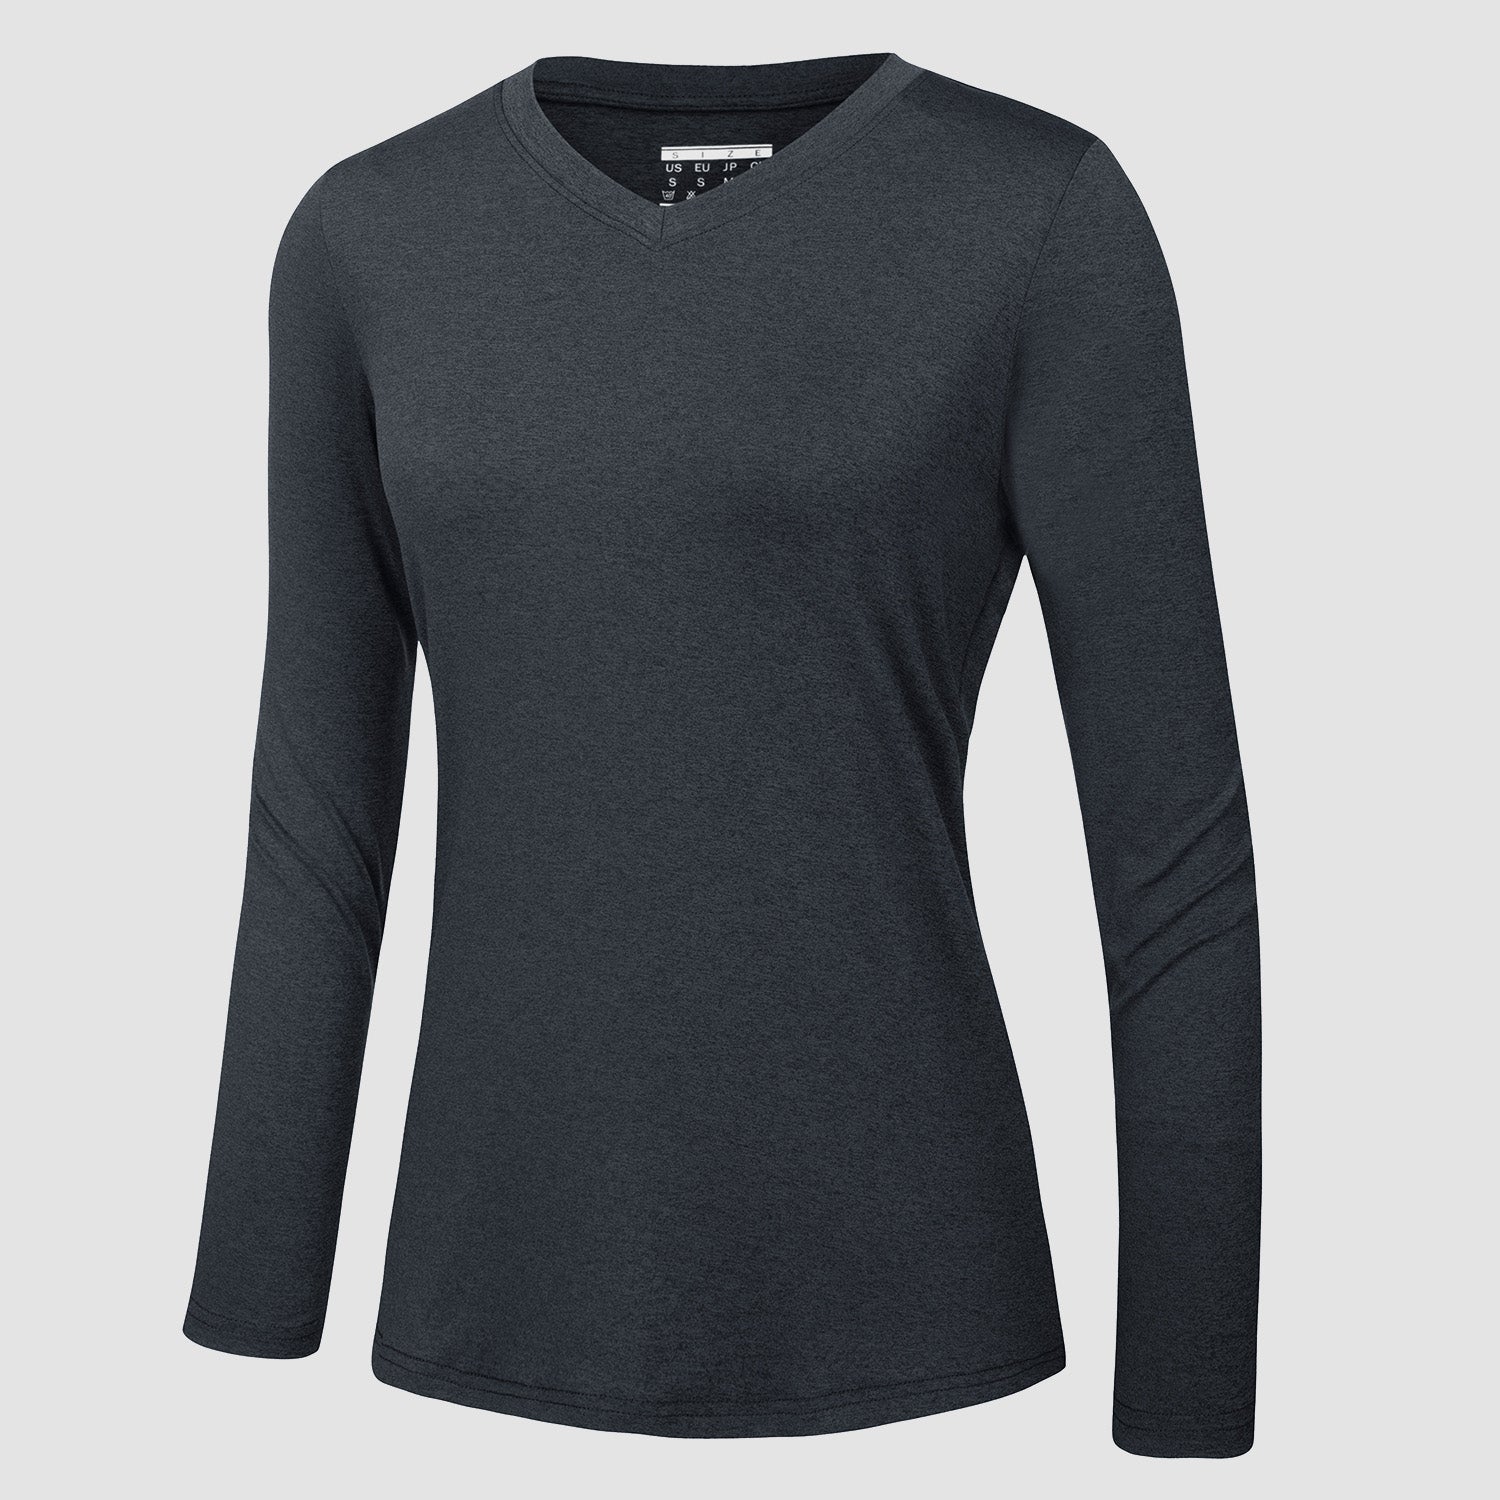 https://magcomsen.com/cdn/shop/products/Women_s-Long-Sleeve-Shirt-V-Neck-SPF-Shirts-UPF-50_-Quick-Dry-Workout-Hiking-Tee-Shirts-Rashguard_16.jpg?v=1666680575&width=1500